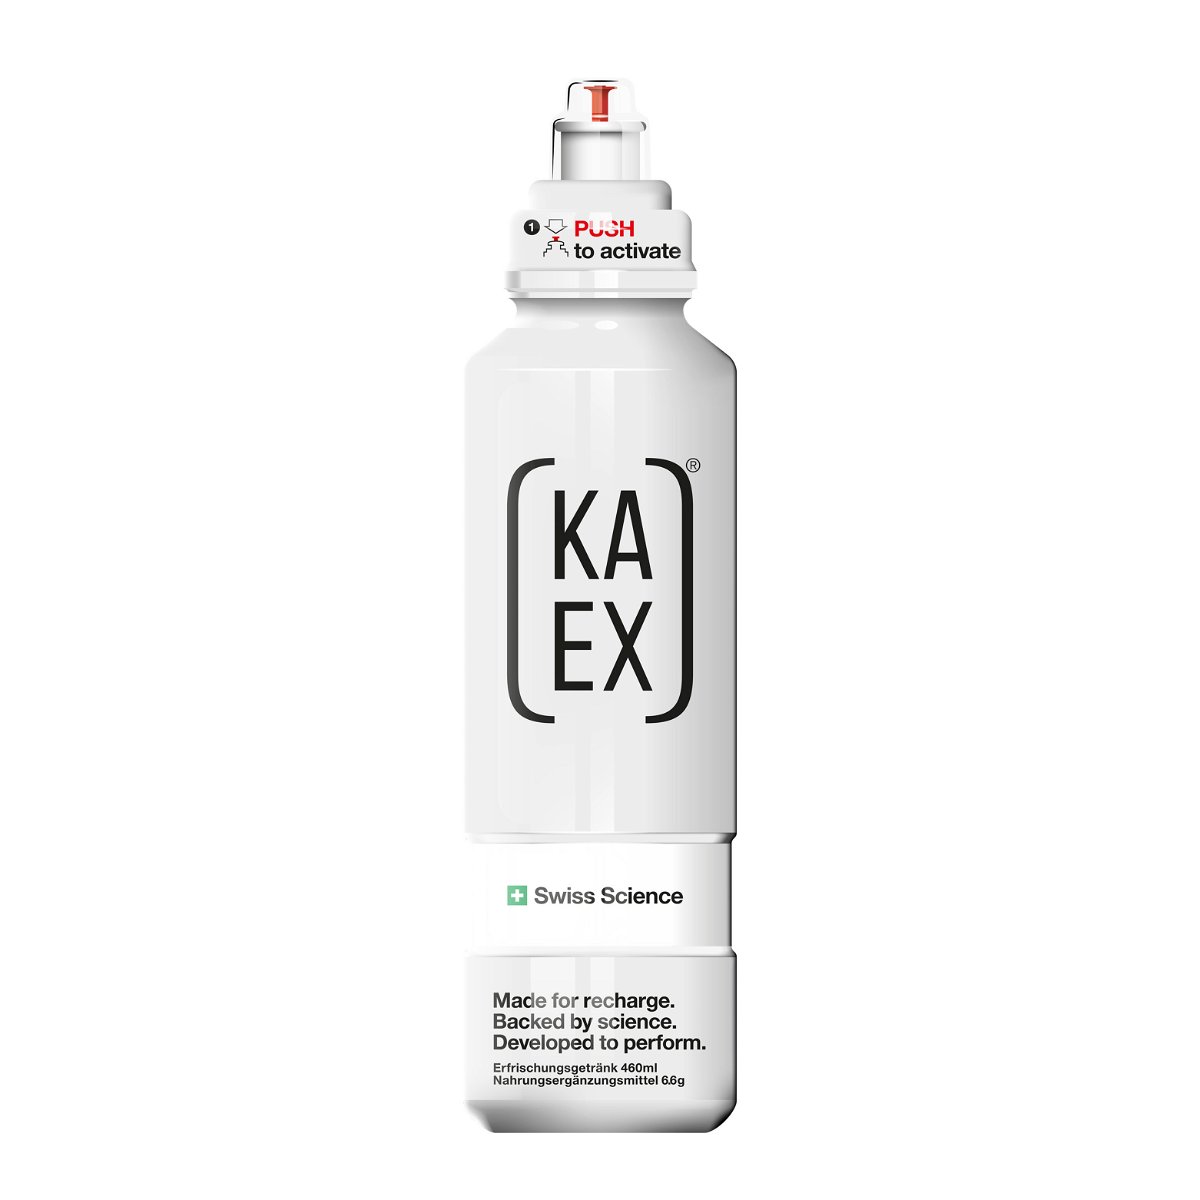 KA-EX GO